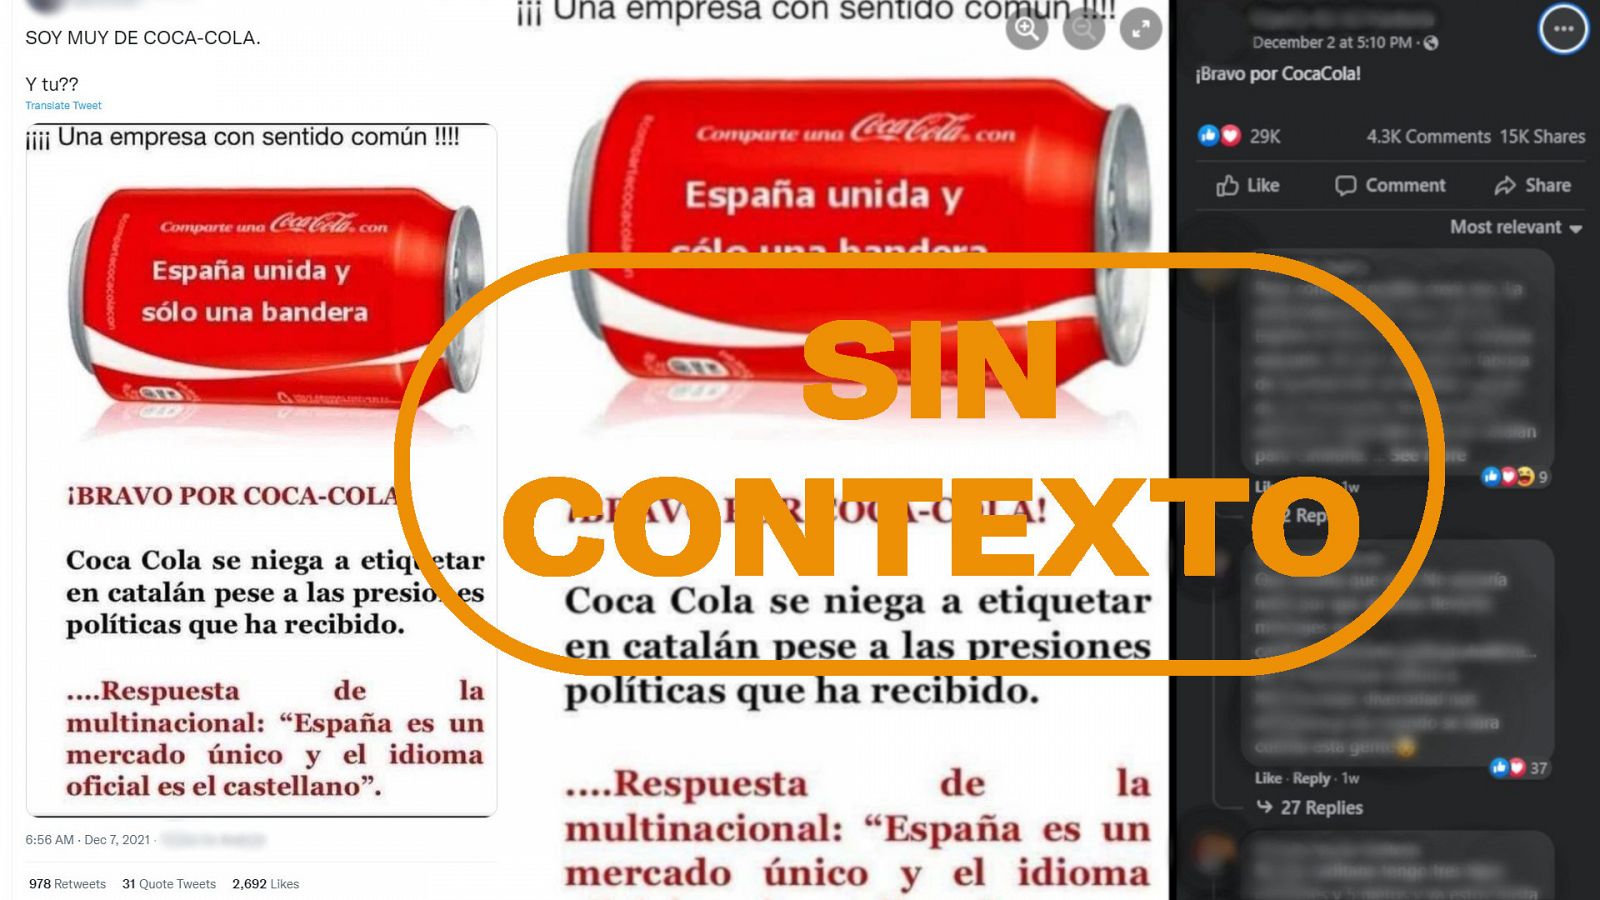 Mensajes de redes que dicen que Coca-Cola se niega a etiquetar en catalán, con el sello Sin Contexto en naranja de VerificaRTVE